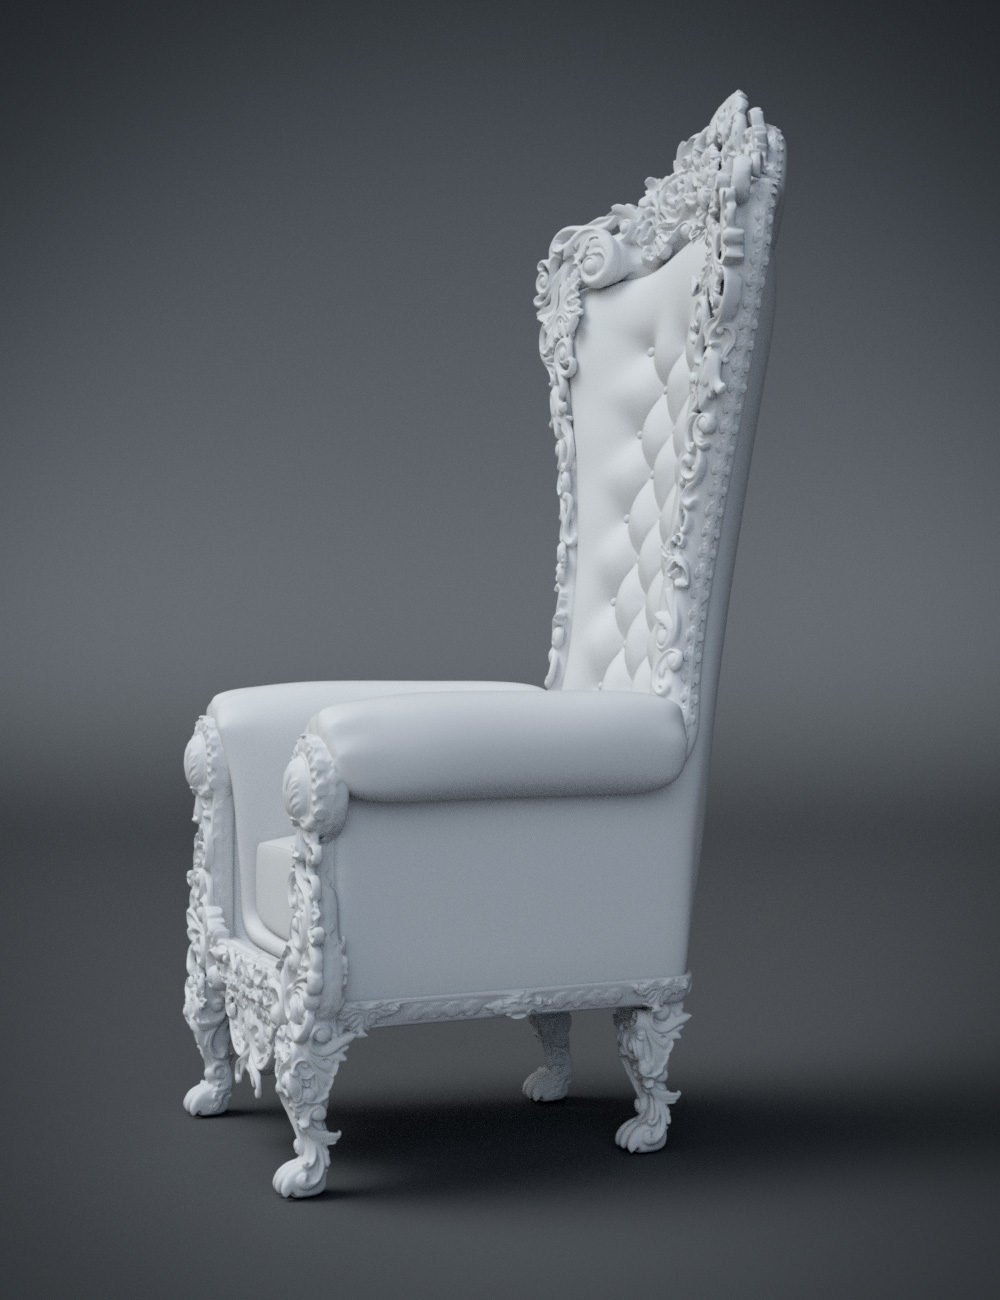 Royal Throne by: Hypertaf, 3D Models by Daz 3D